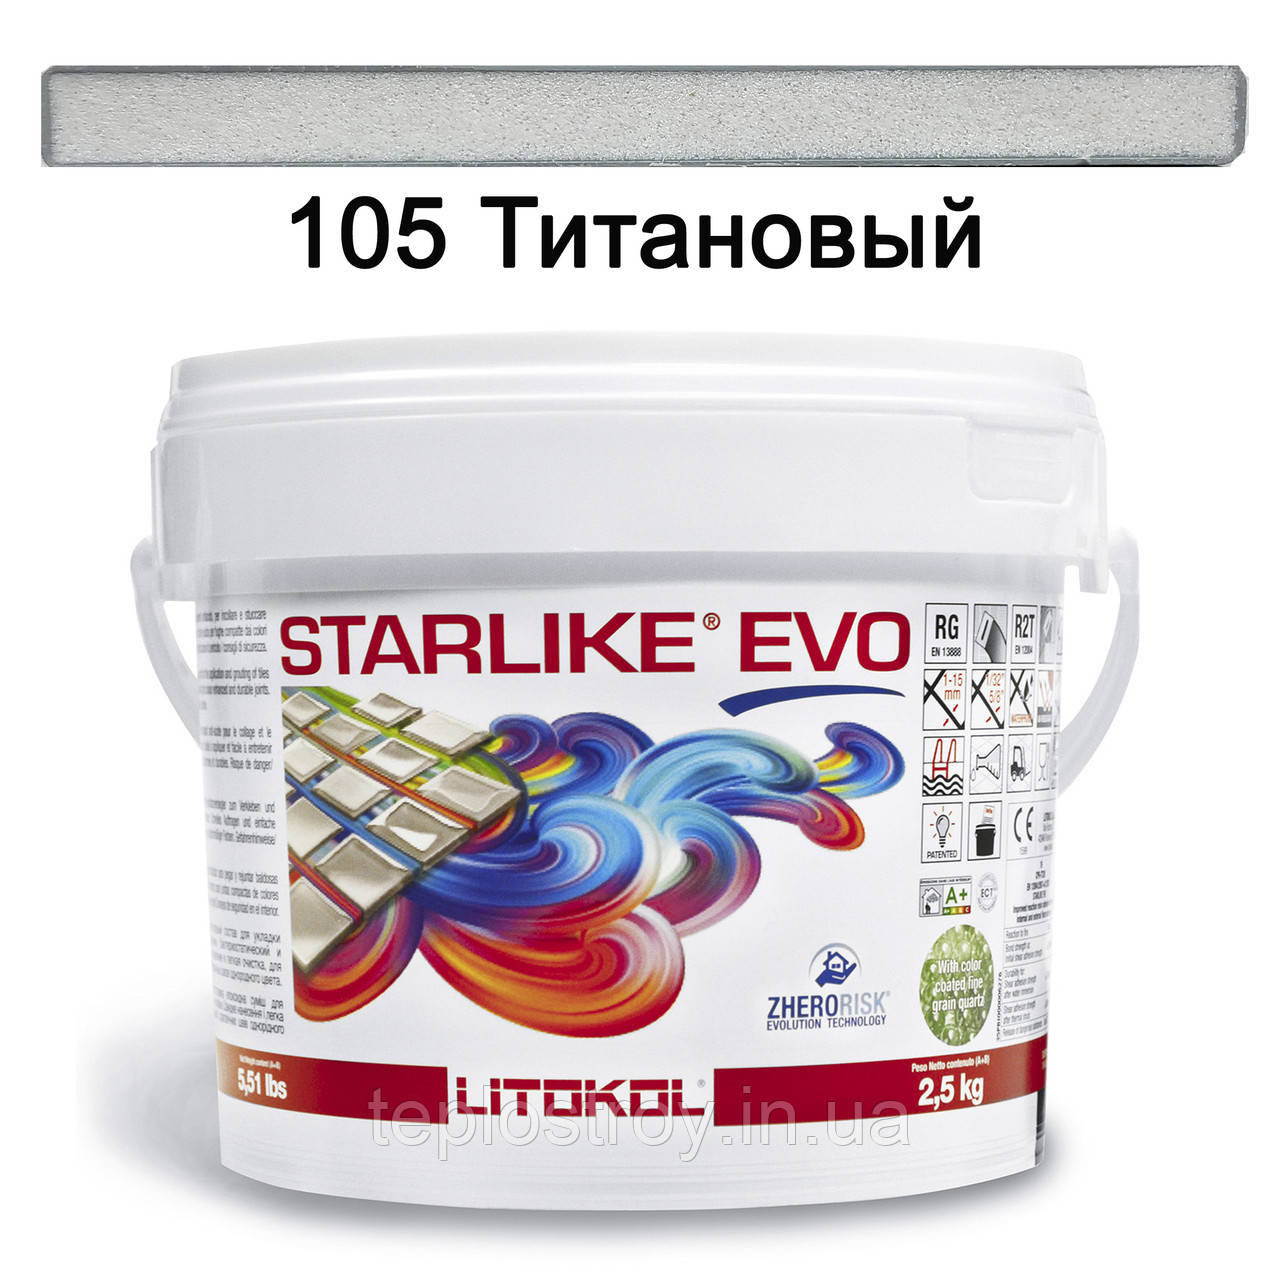 Епоксидна затирка Litokol Starlike EVO 105 (Титановий) CLASS COLD COLLECTION 2.5 кг